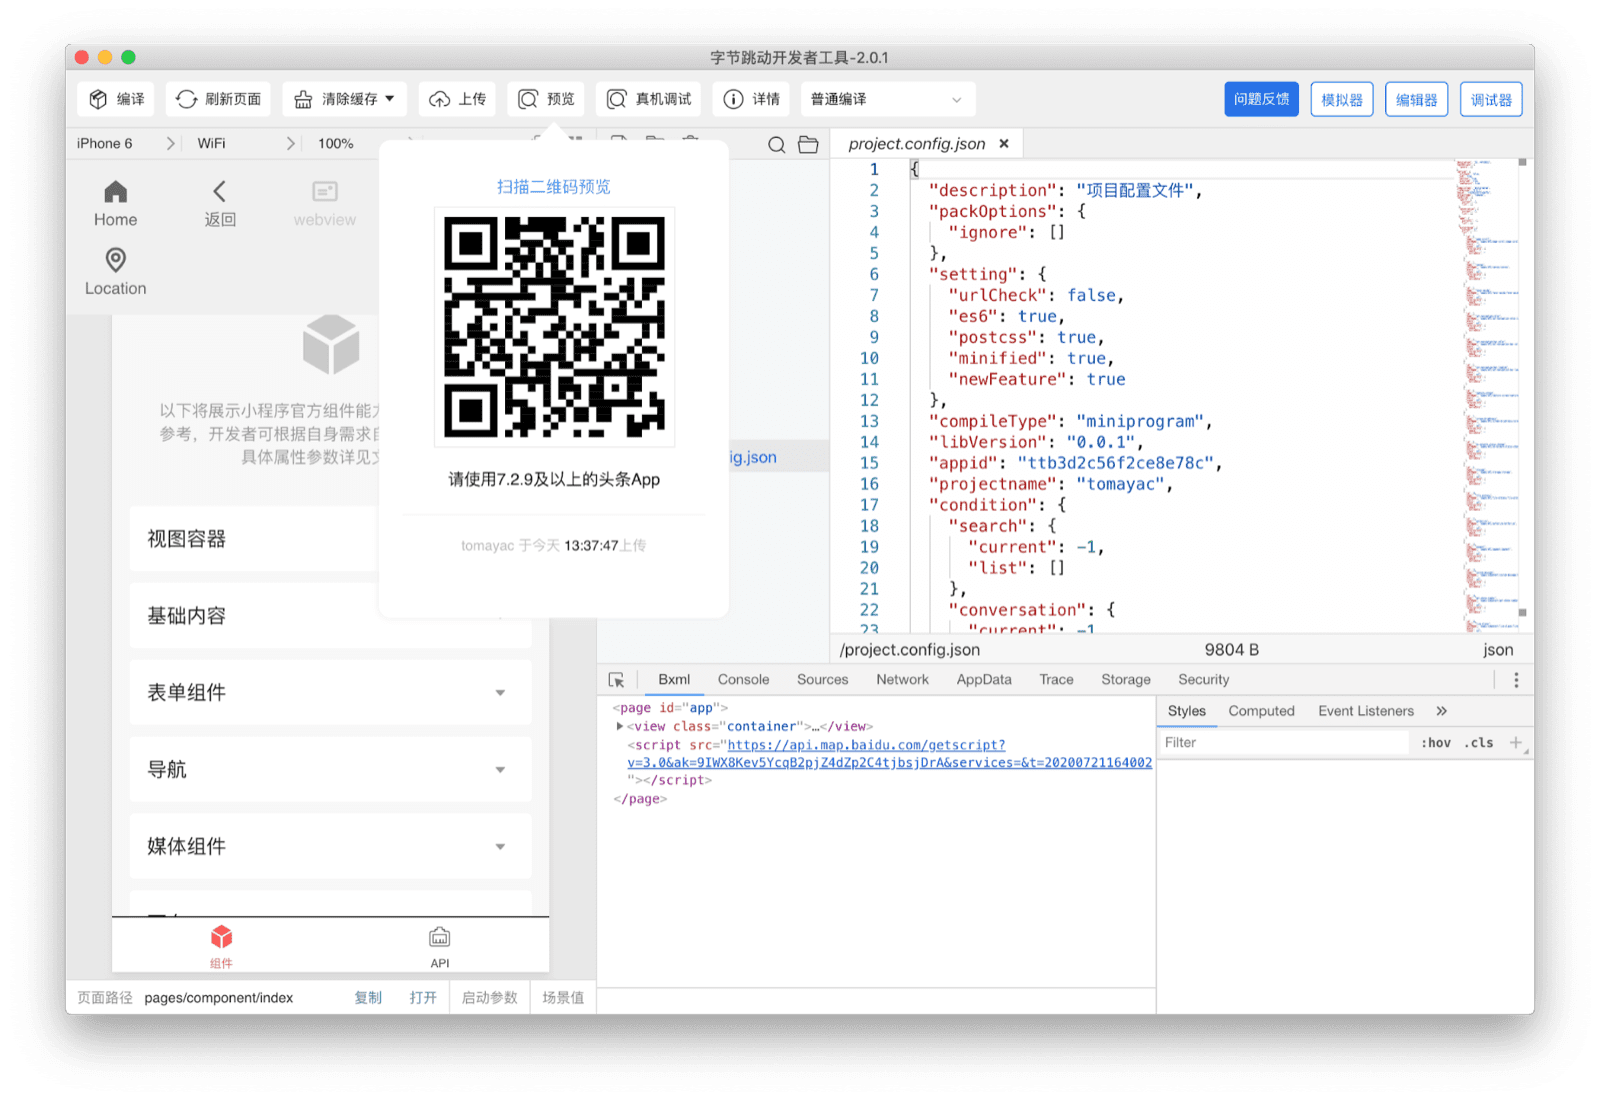 ByteDance DevTools показывает QR-код, который пользователь может отсканировать с помощью приложения Douyin, чтобы увидеть текущее мини-приложение на своем устройстве.